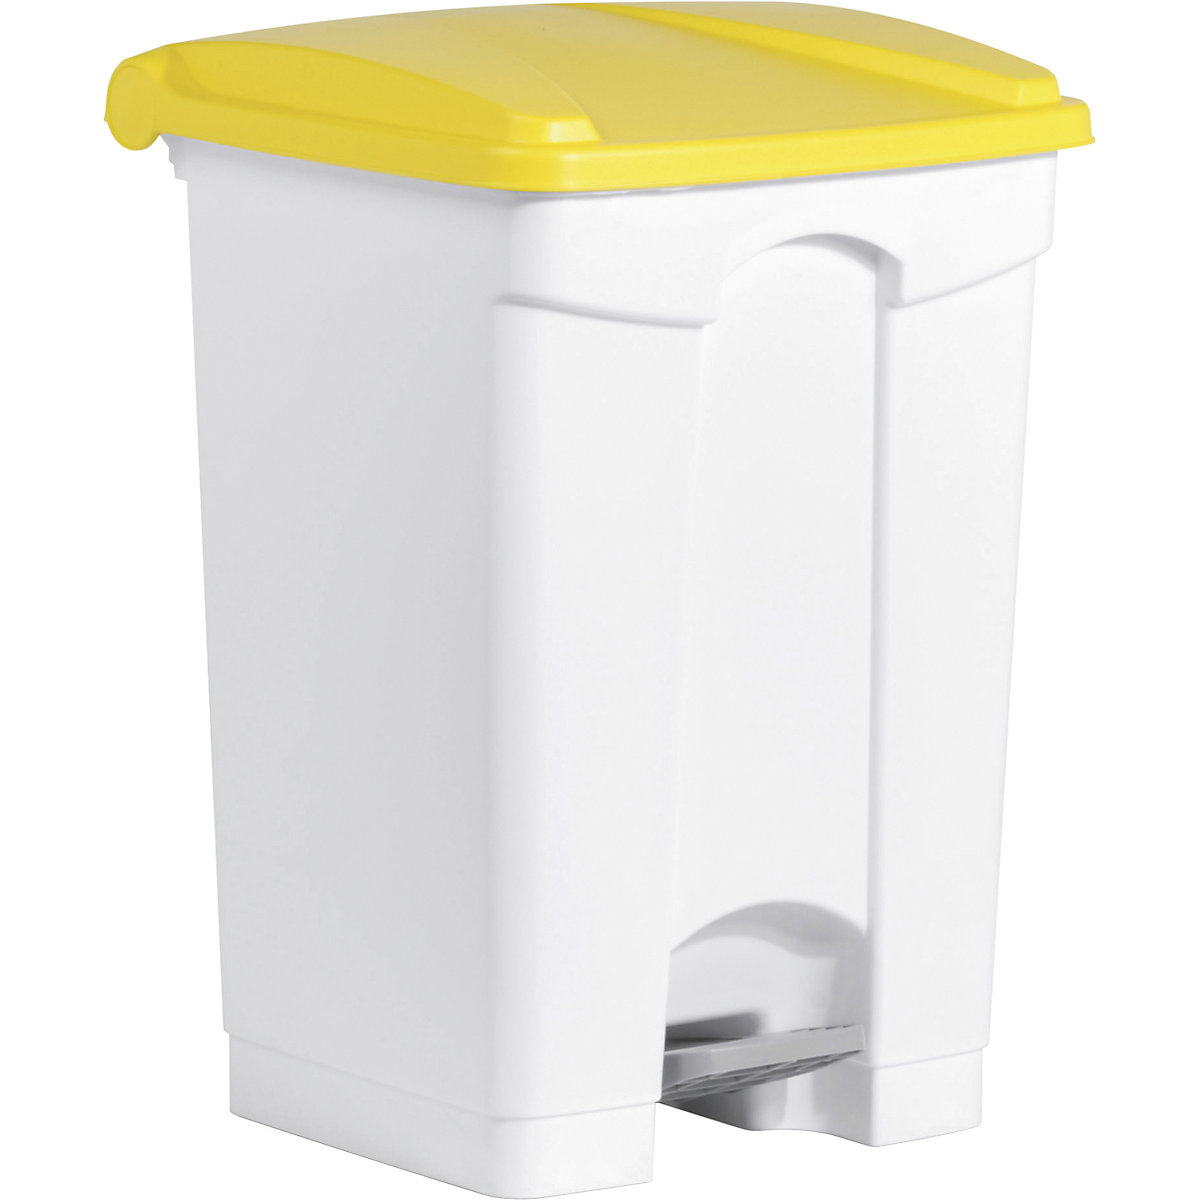 Tretabfallbehälter helit, Volumen 45 l, BxHxT 410 x 605 x 400 mm, weiß, Deckel gelb